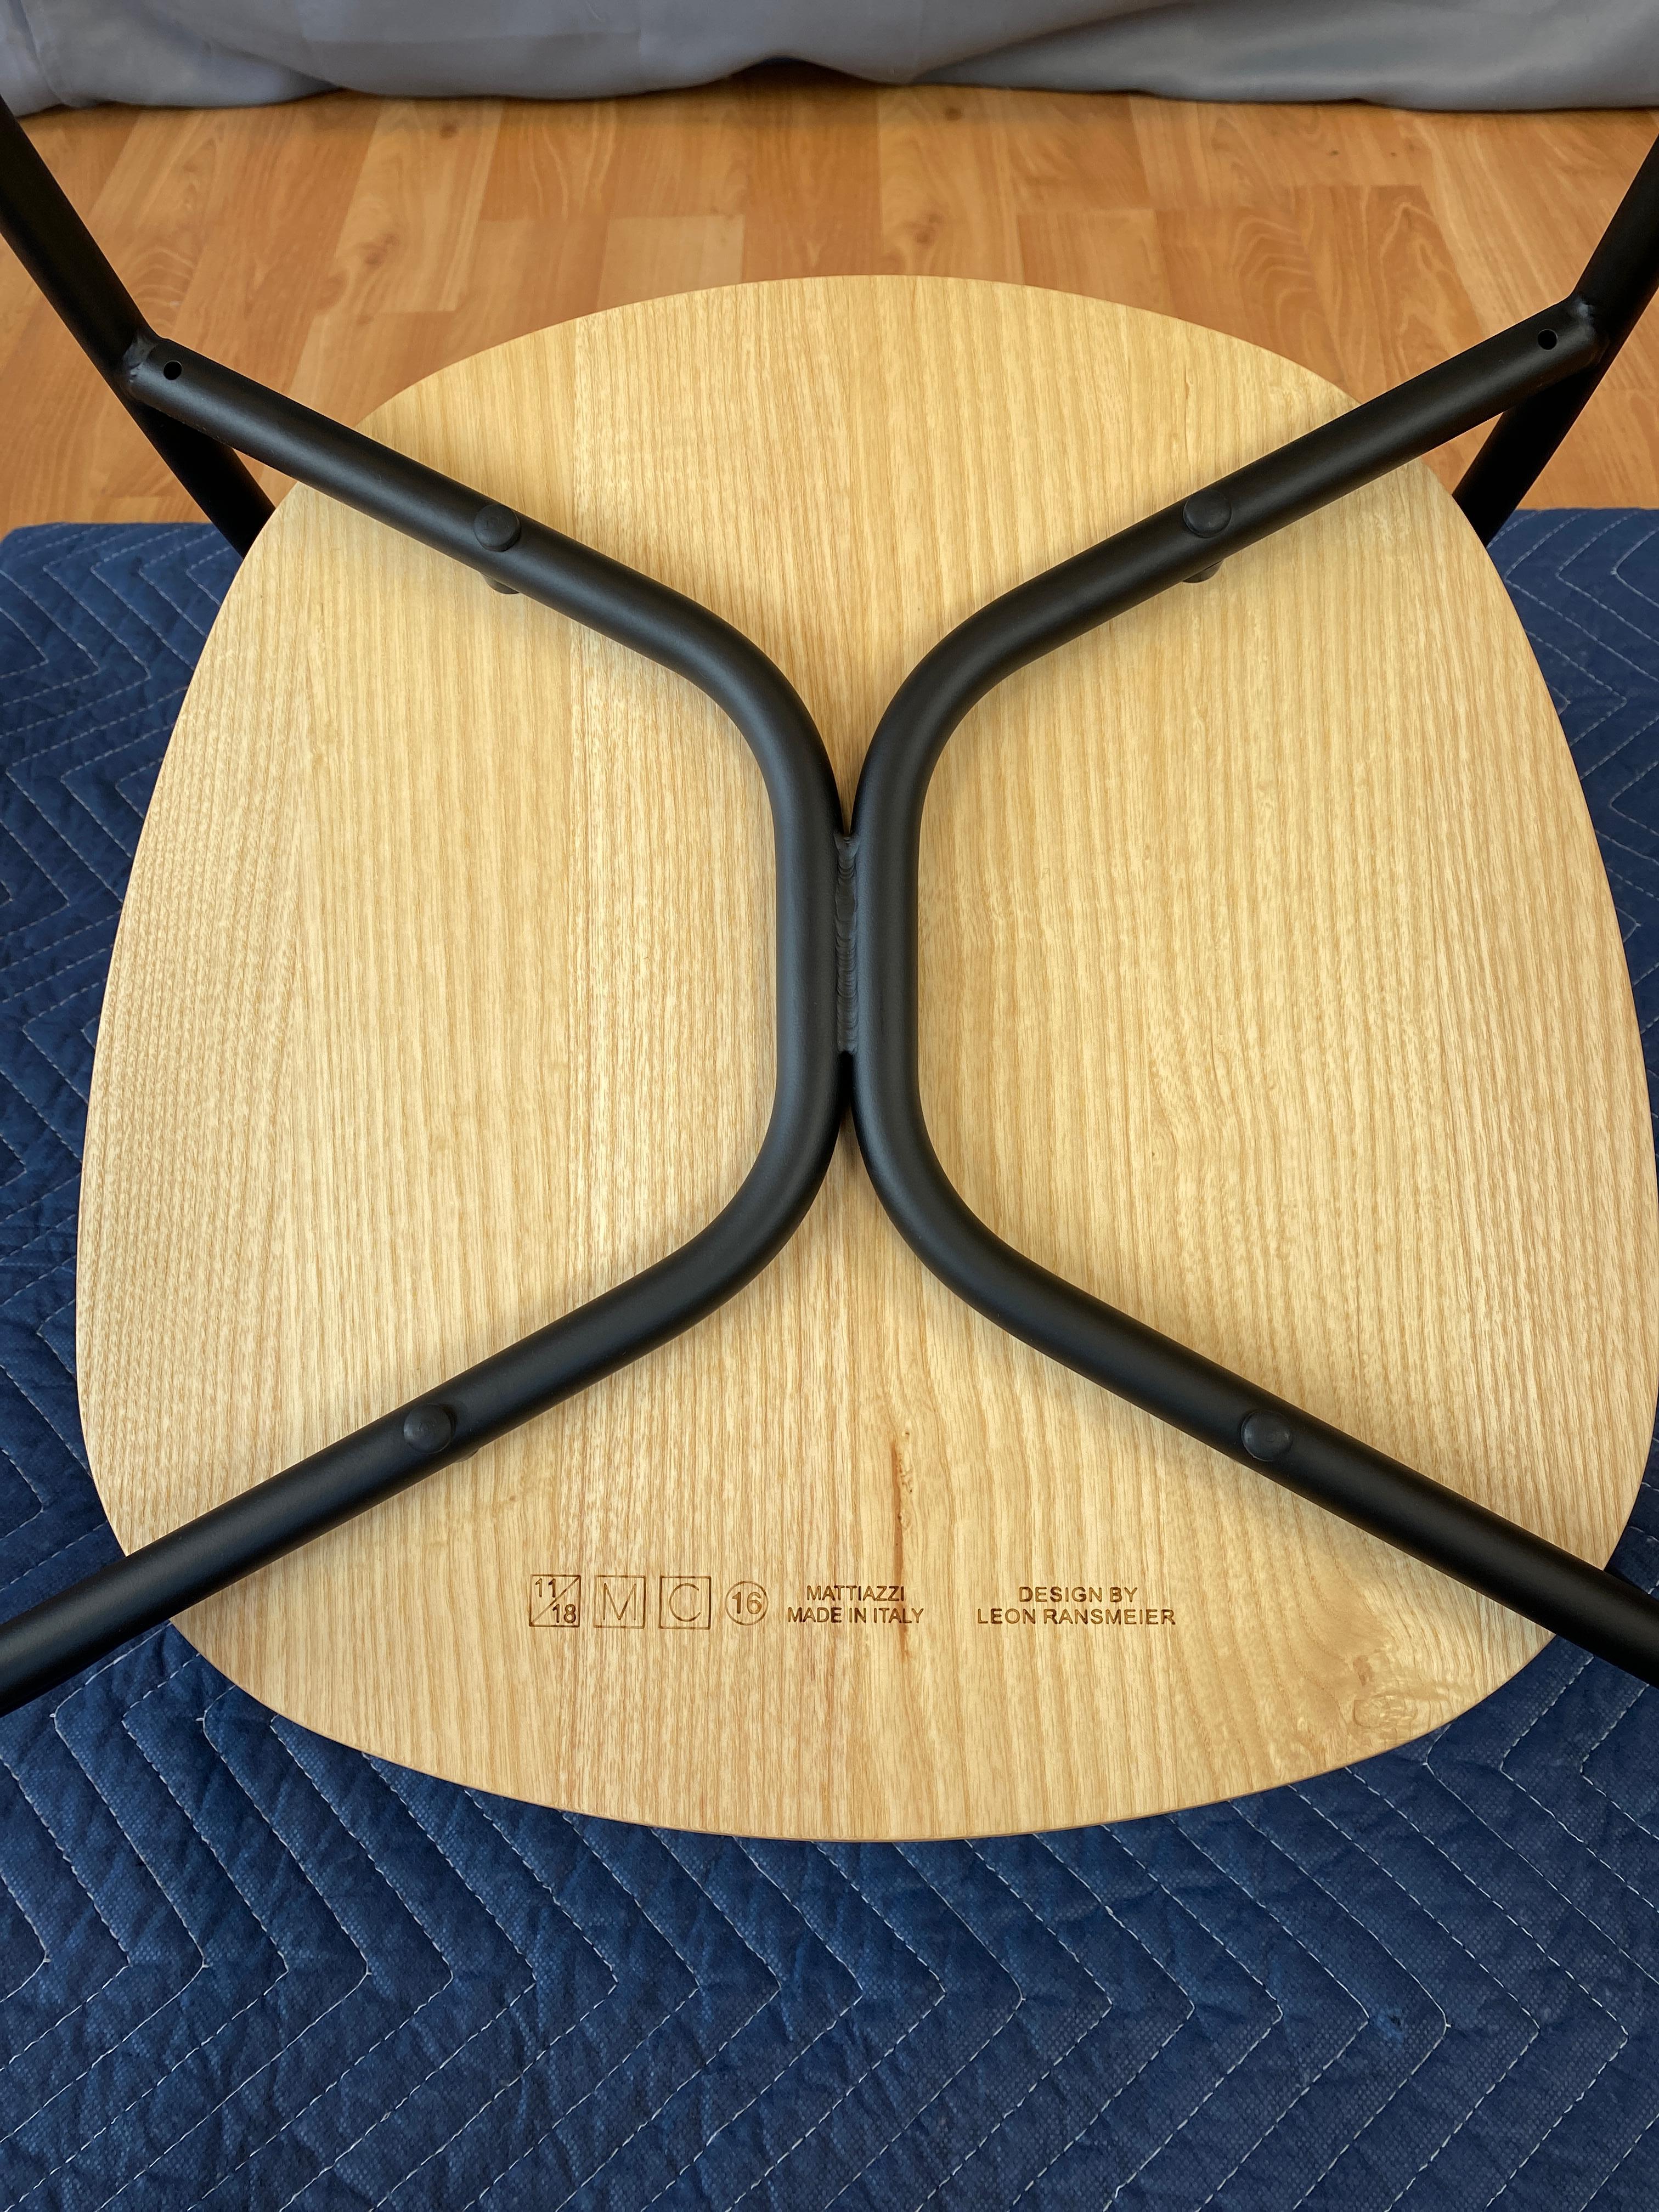 Leon Ransmeier Designed Forcina Chair for Mattiazzi 2